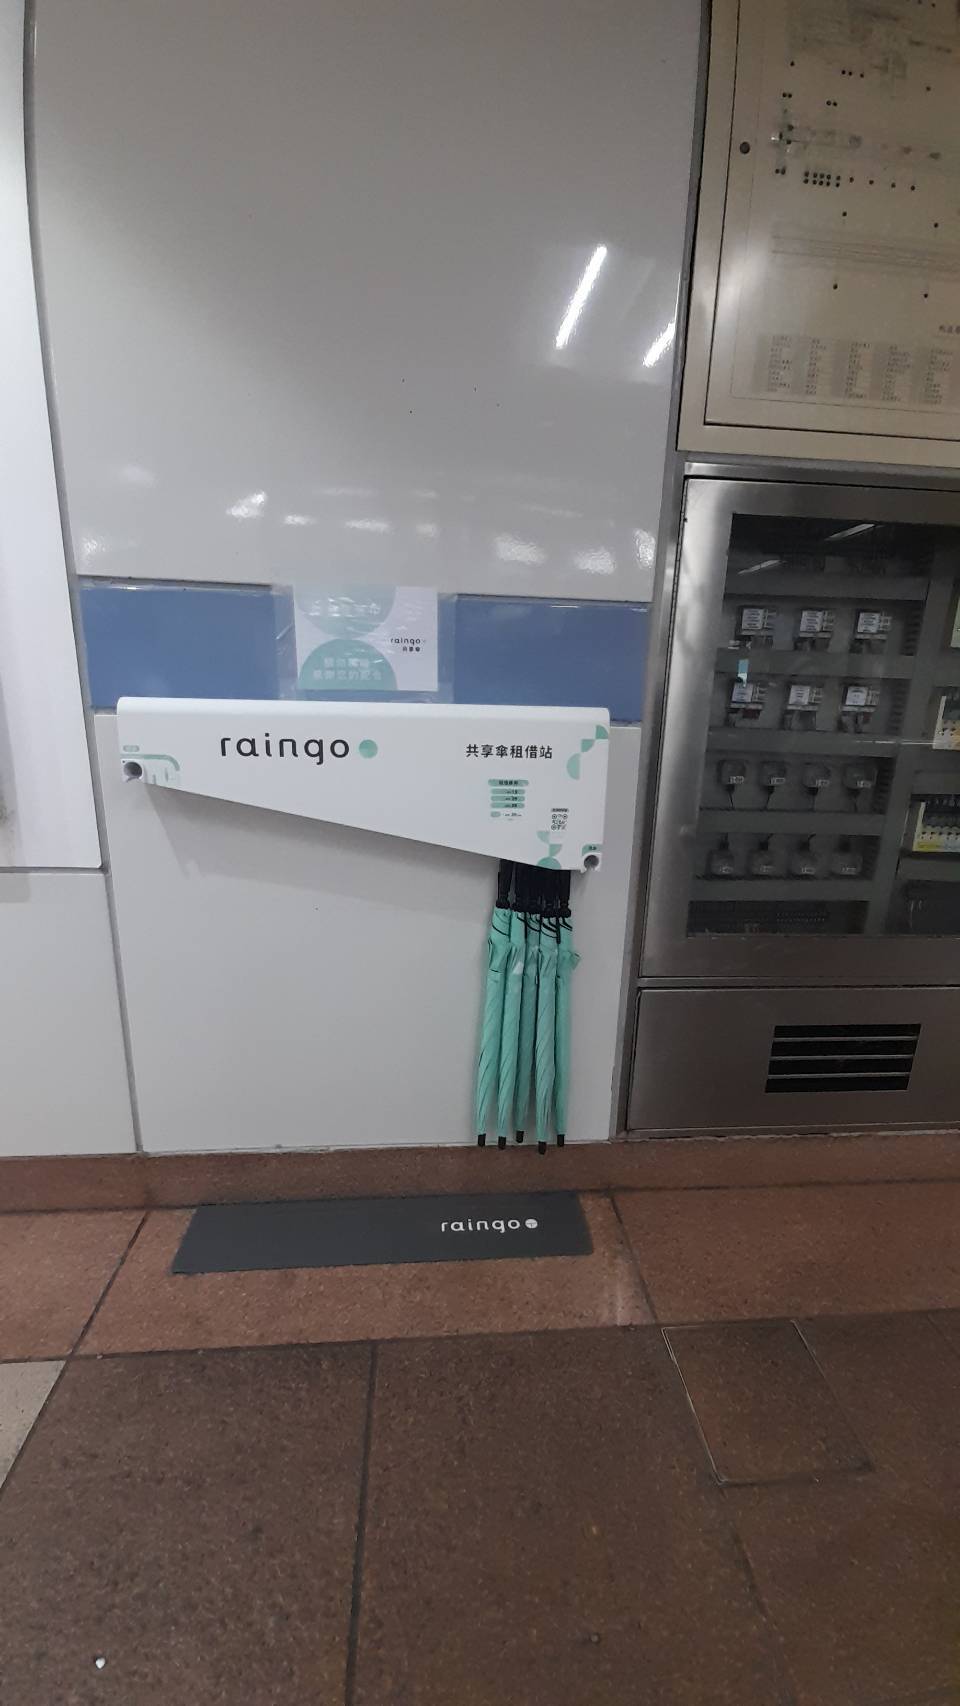 臺北捷運預計於8月底完成「共享雨傘租借站」建置